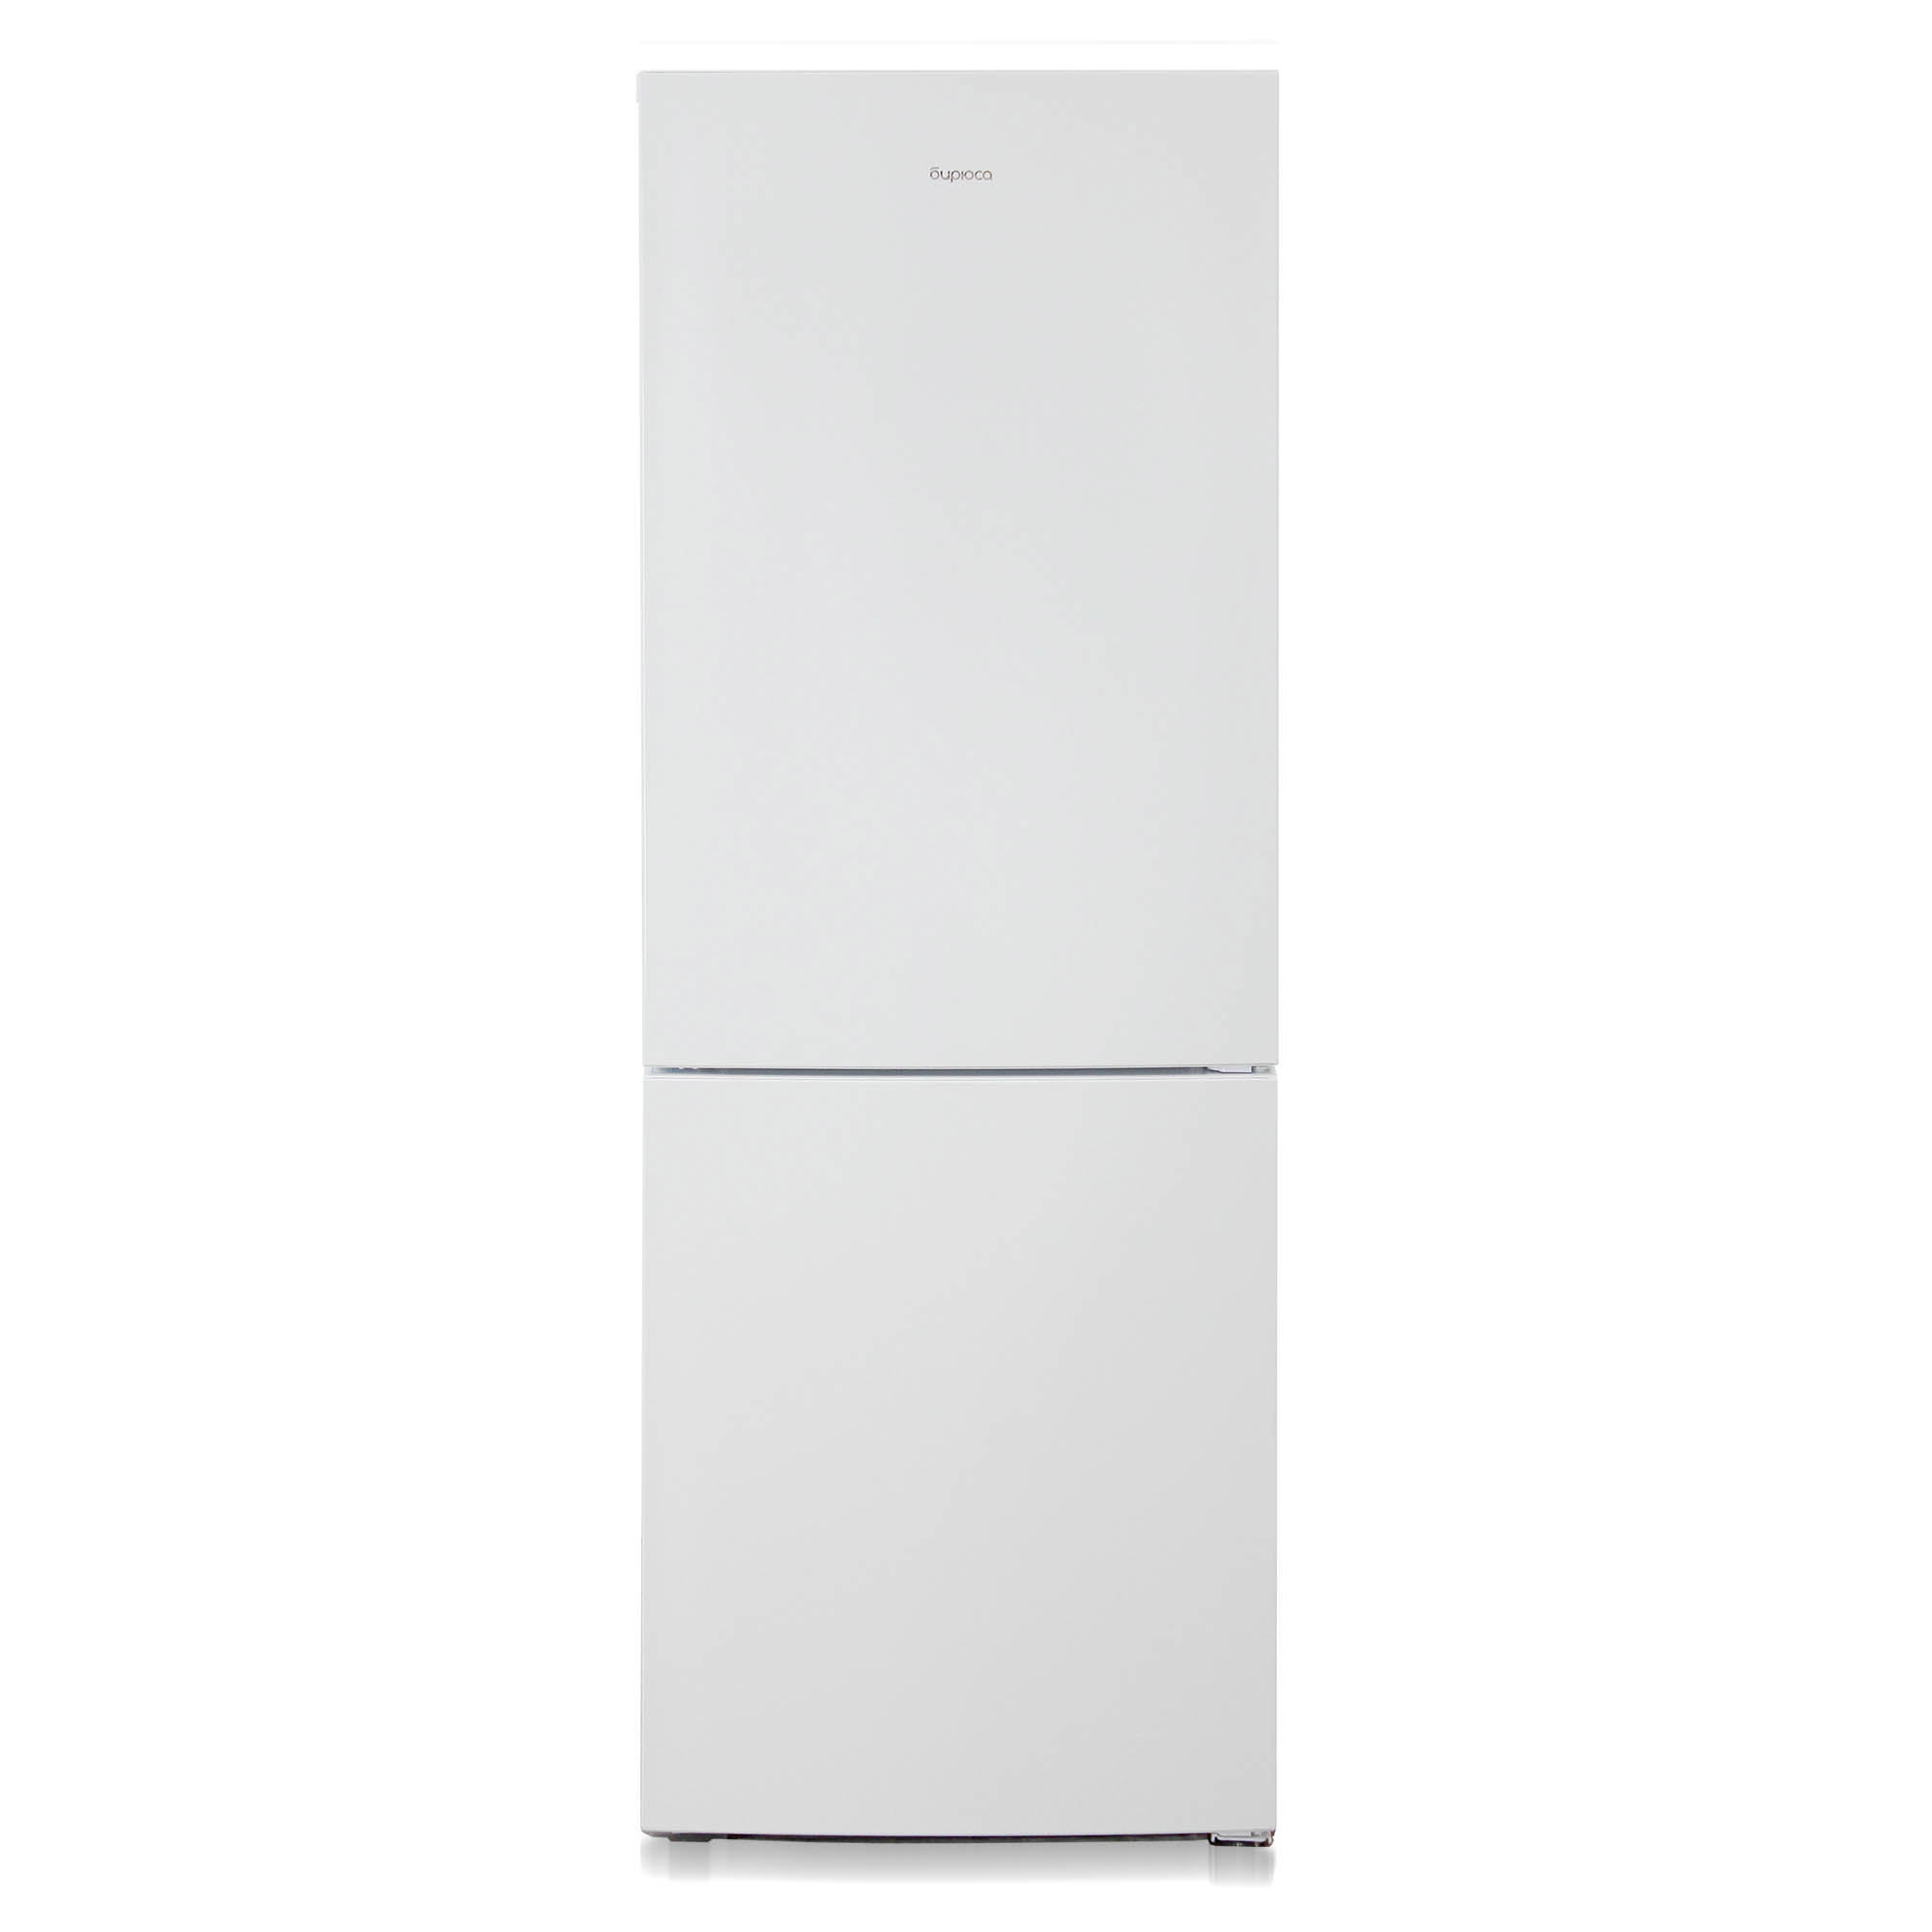 91054819 Отдельностоящий холодильник Б-6033 60x175 см цвет белый STLM-0460033 БИРЮСА